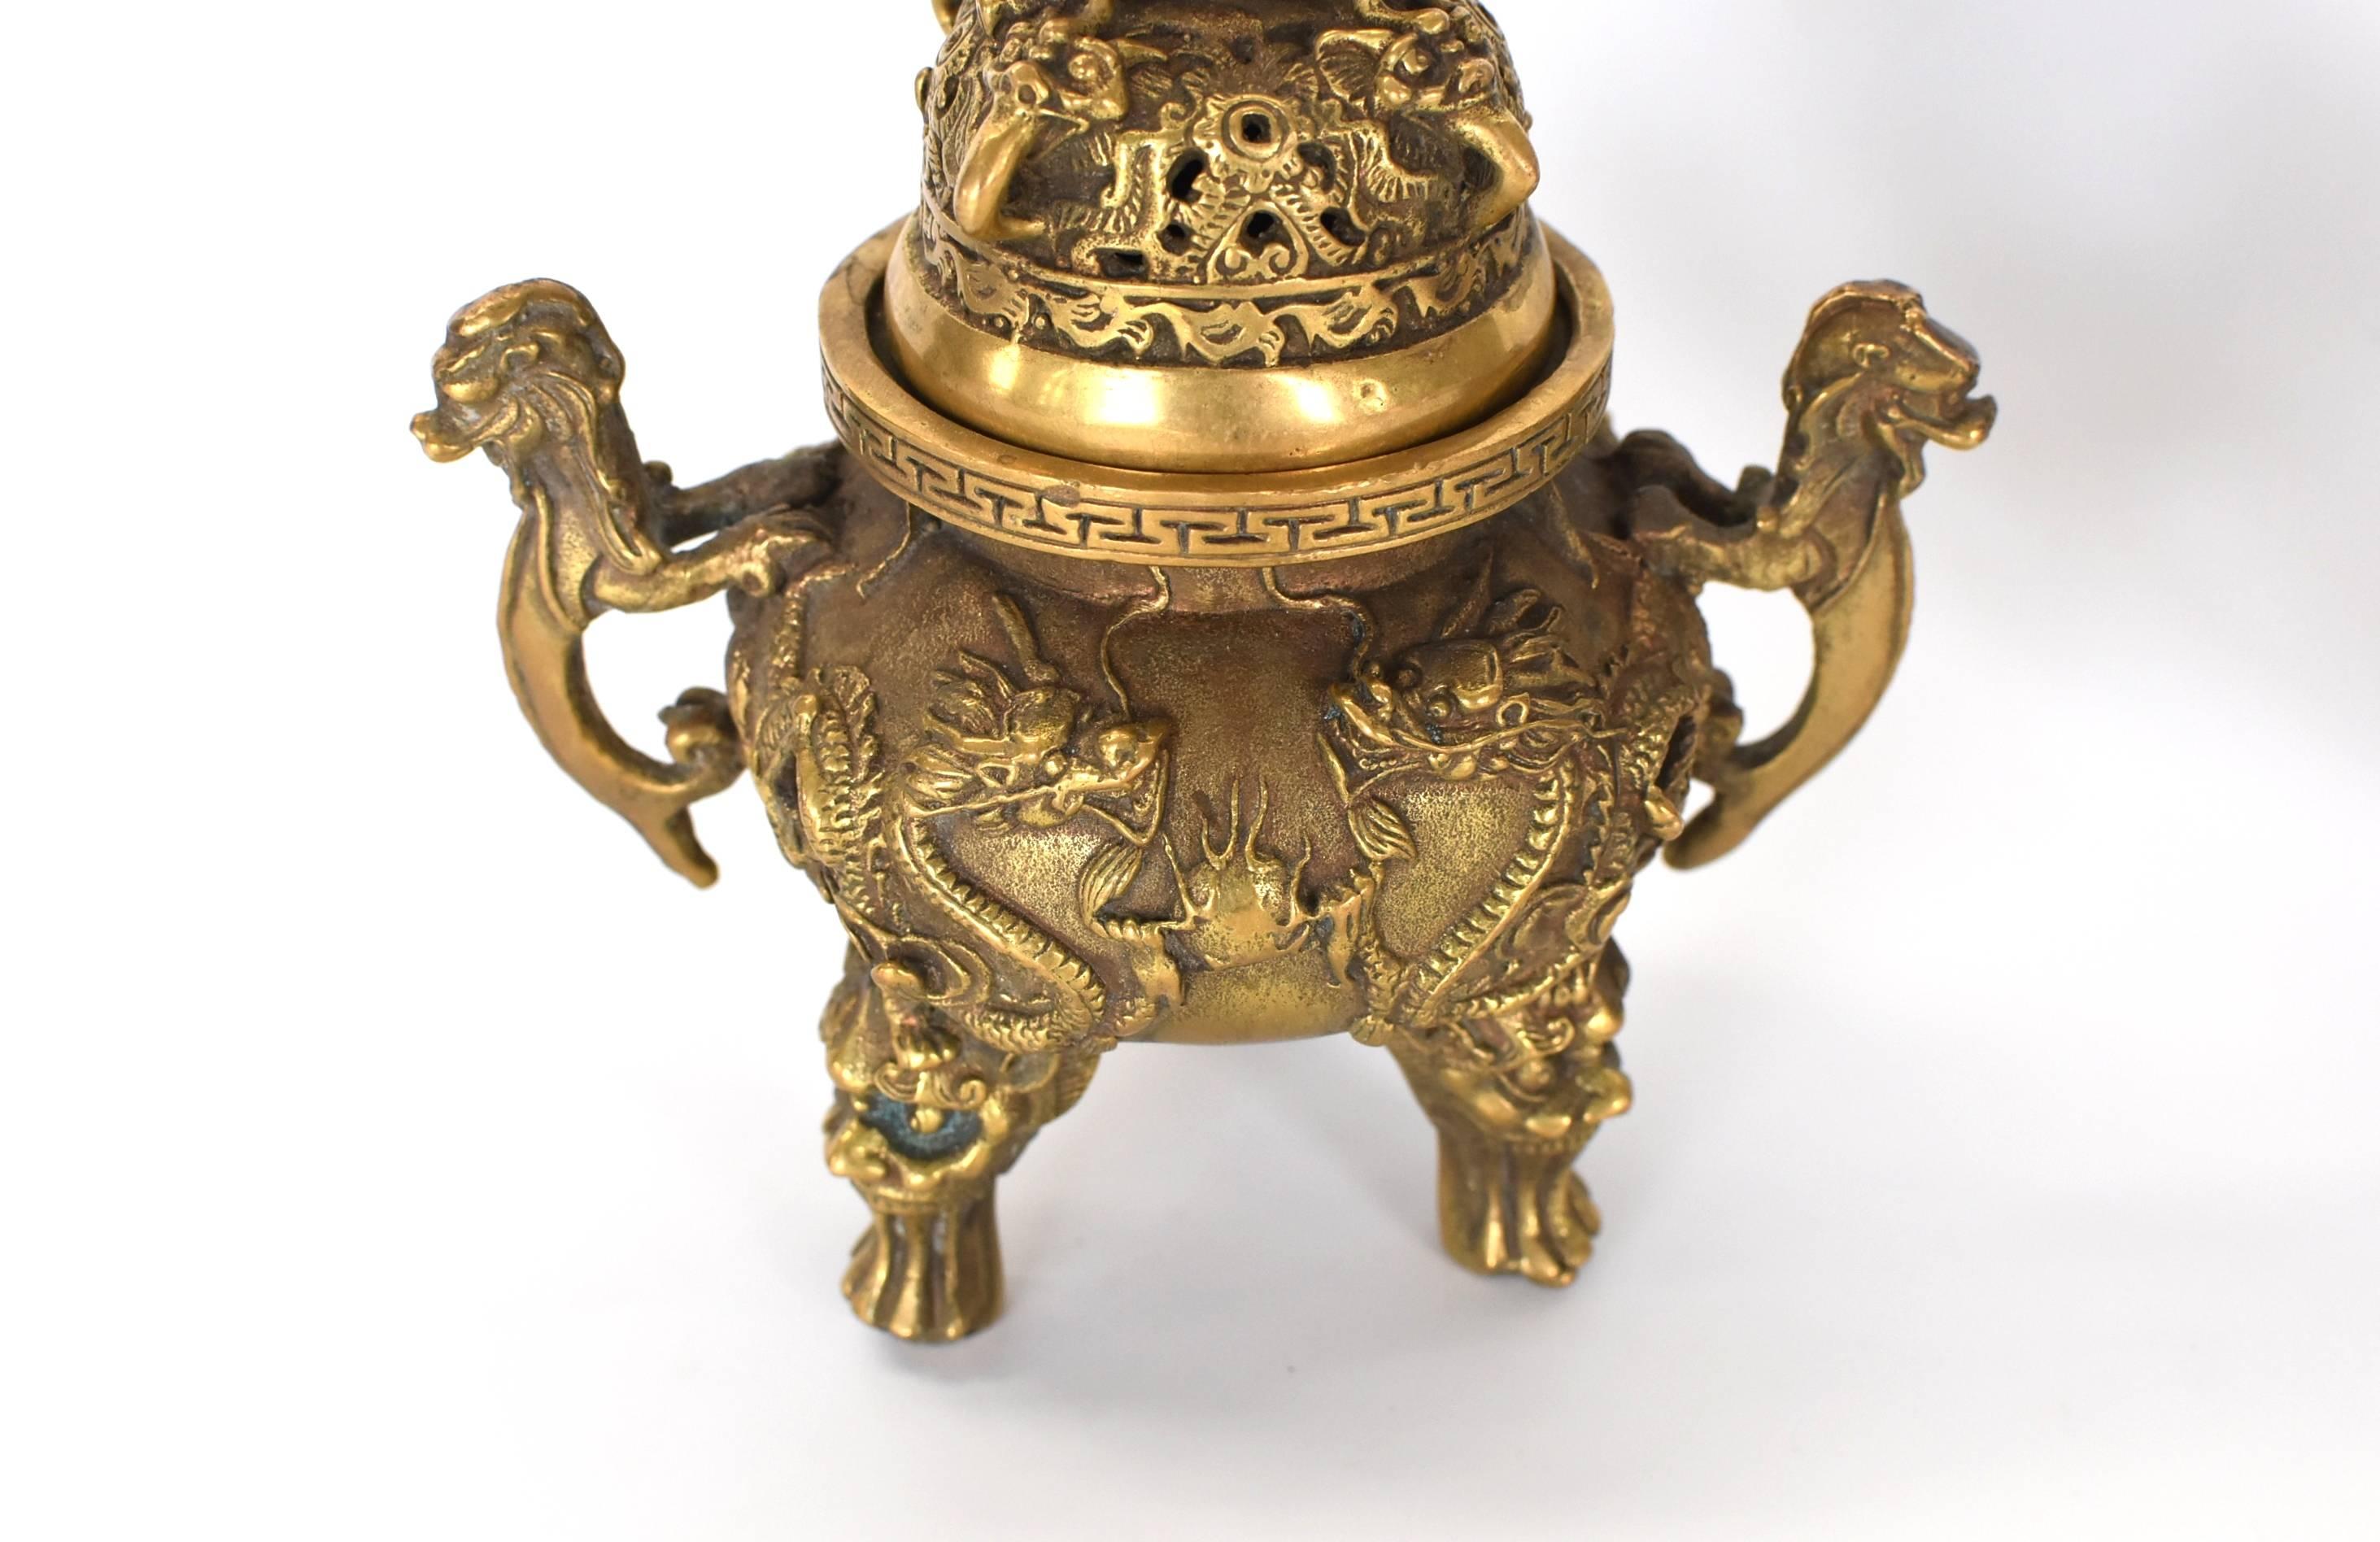 Details about   Brass Dragon Incense Burner Small Burner Hollow With Lid Incense Burner Ornament 